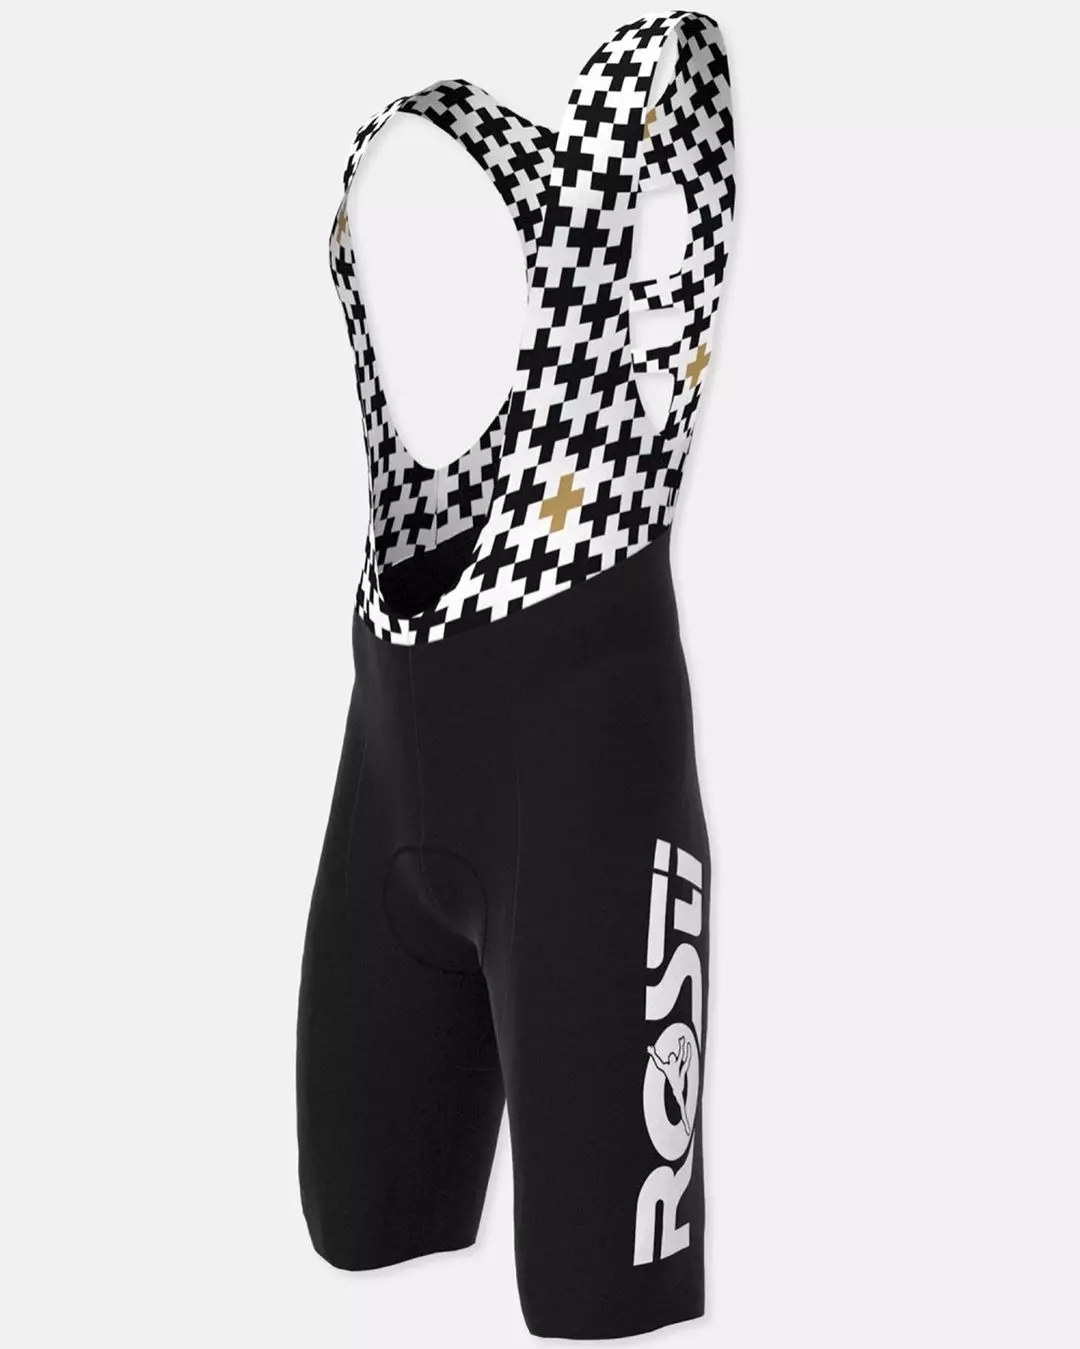 Voshorts: Types de cyclisme, short cycliste des femmes et des hommes de la marque Fox et d'autres fabricants de vêtements pour un vélo 20501_31